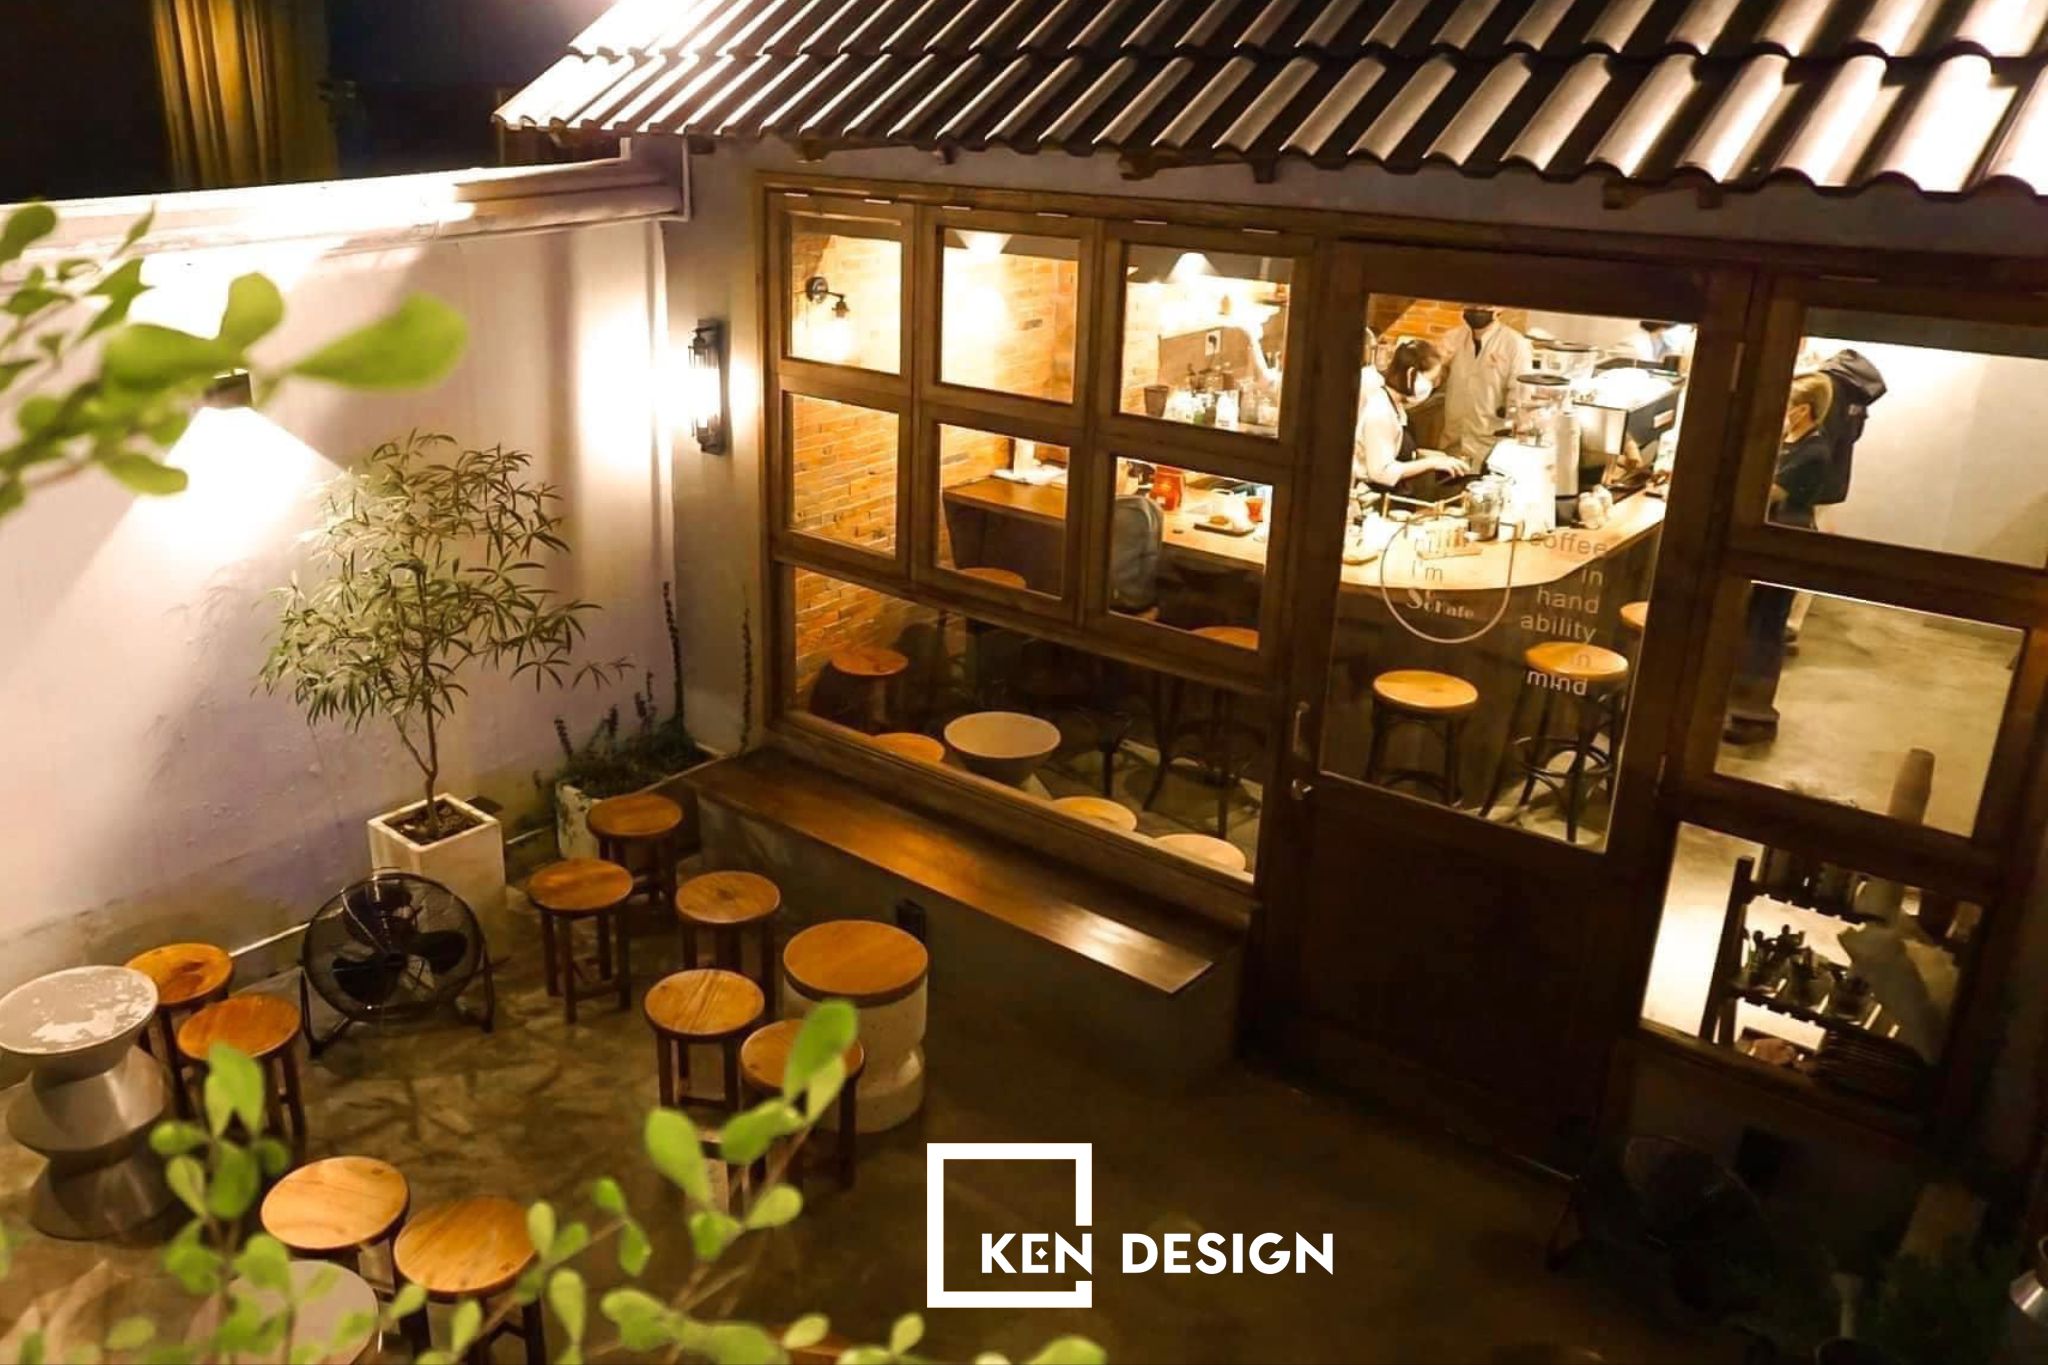 Quán Soo Kafe Coffee - sự kết hợp hài hòa nhiều phong cách trong cùng một thiết kế